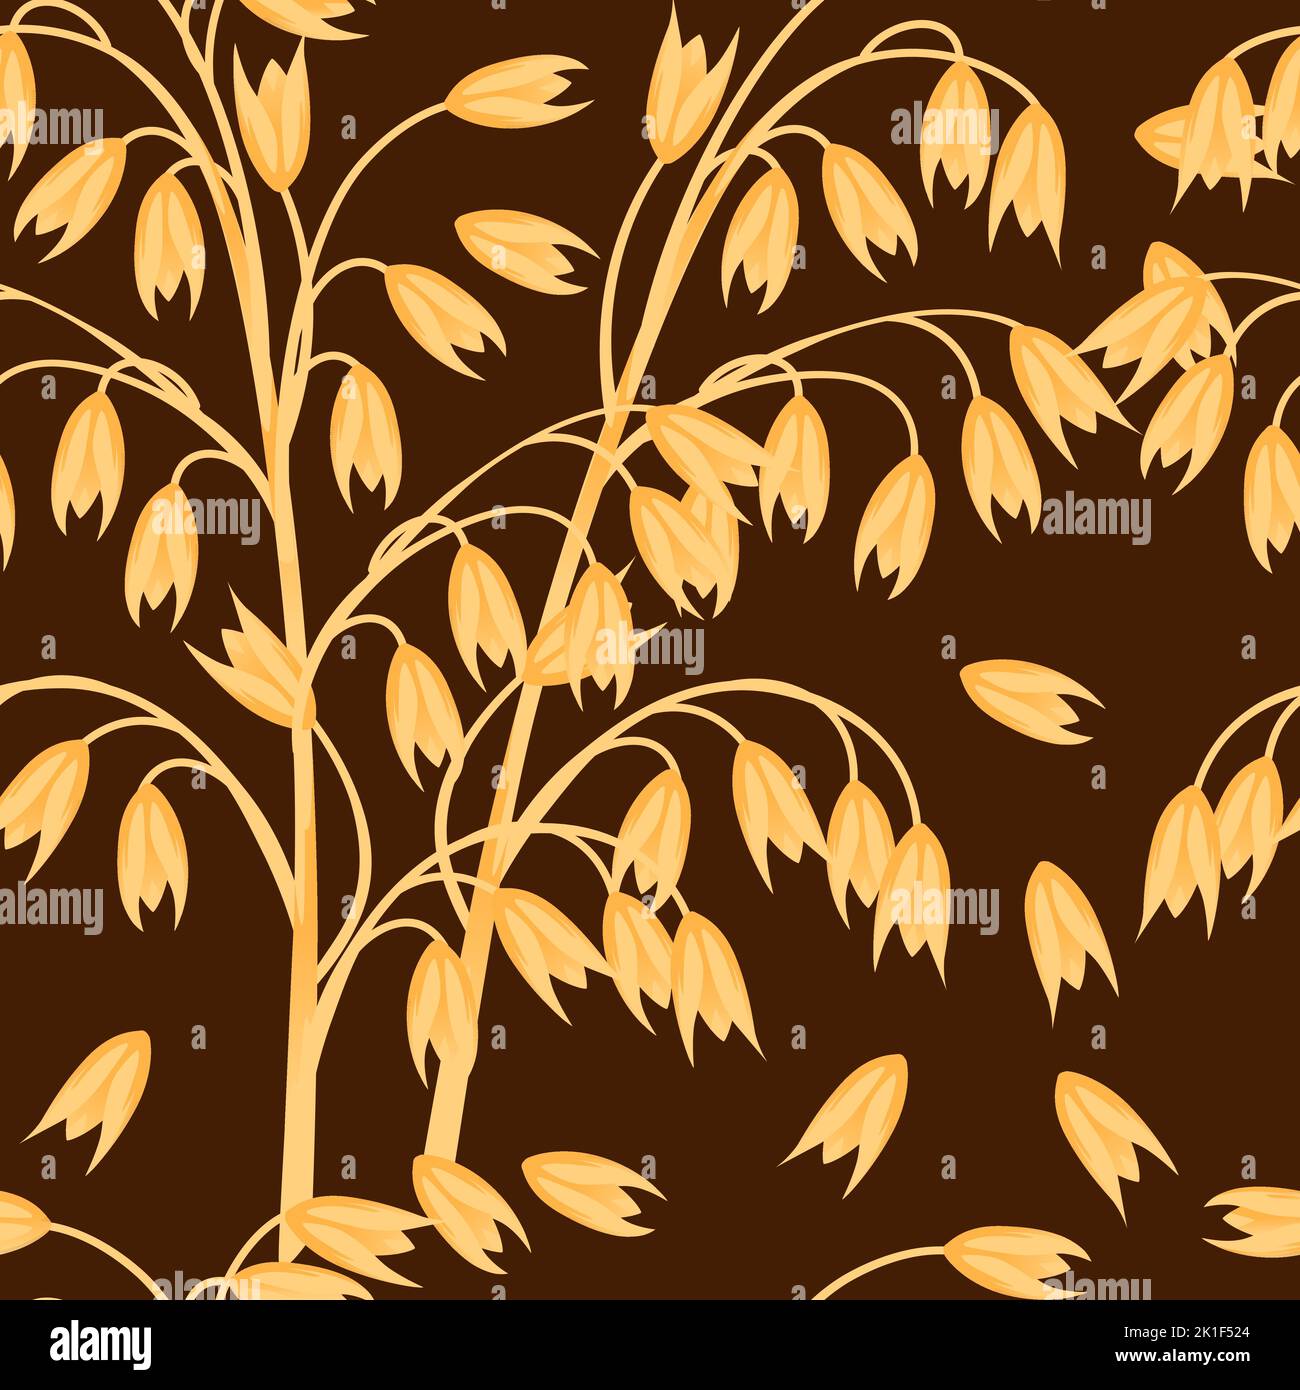 Nahtloses Muster Hafer-Landwirtschaftspflanze mit Ohren Korn-Vektor-Illustration auf braunem Hintergrund Stock Vektor